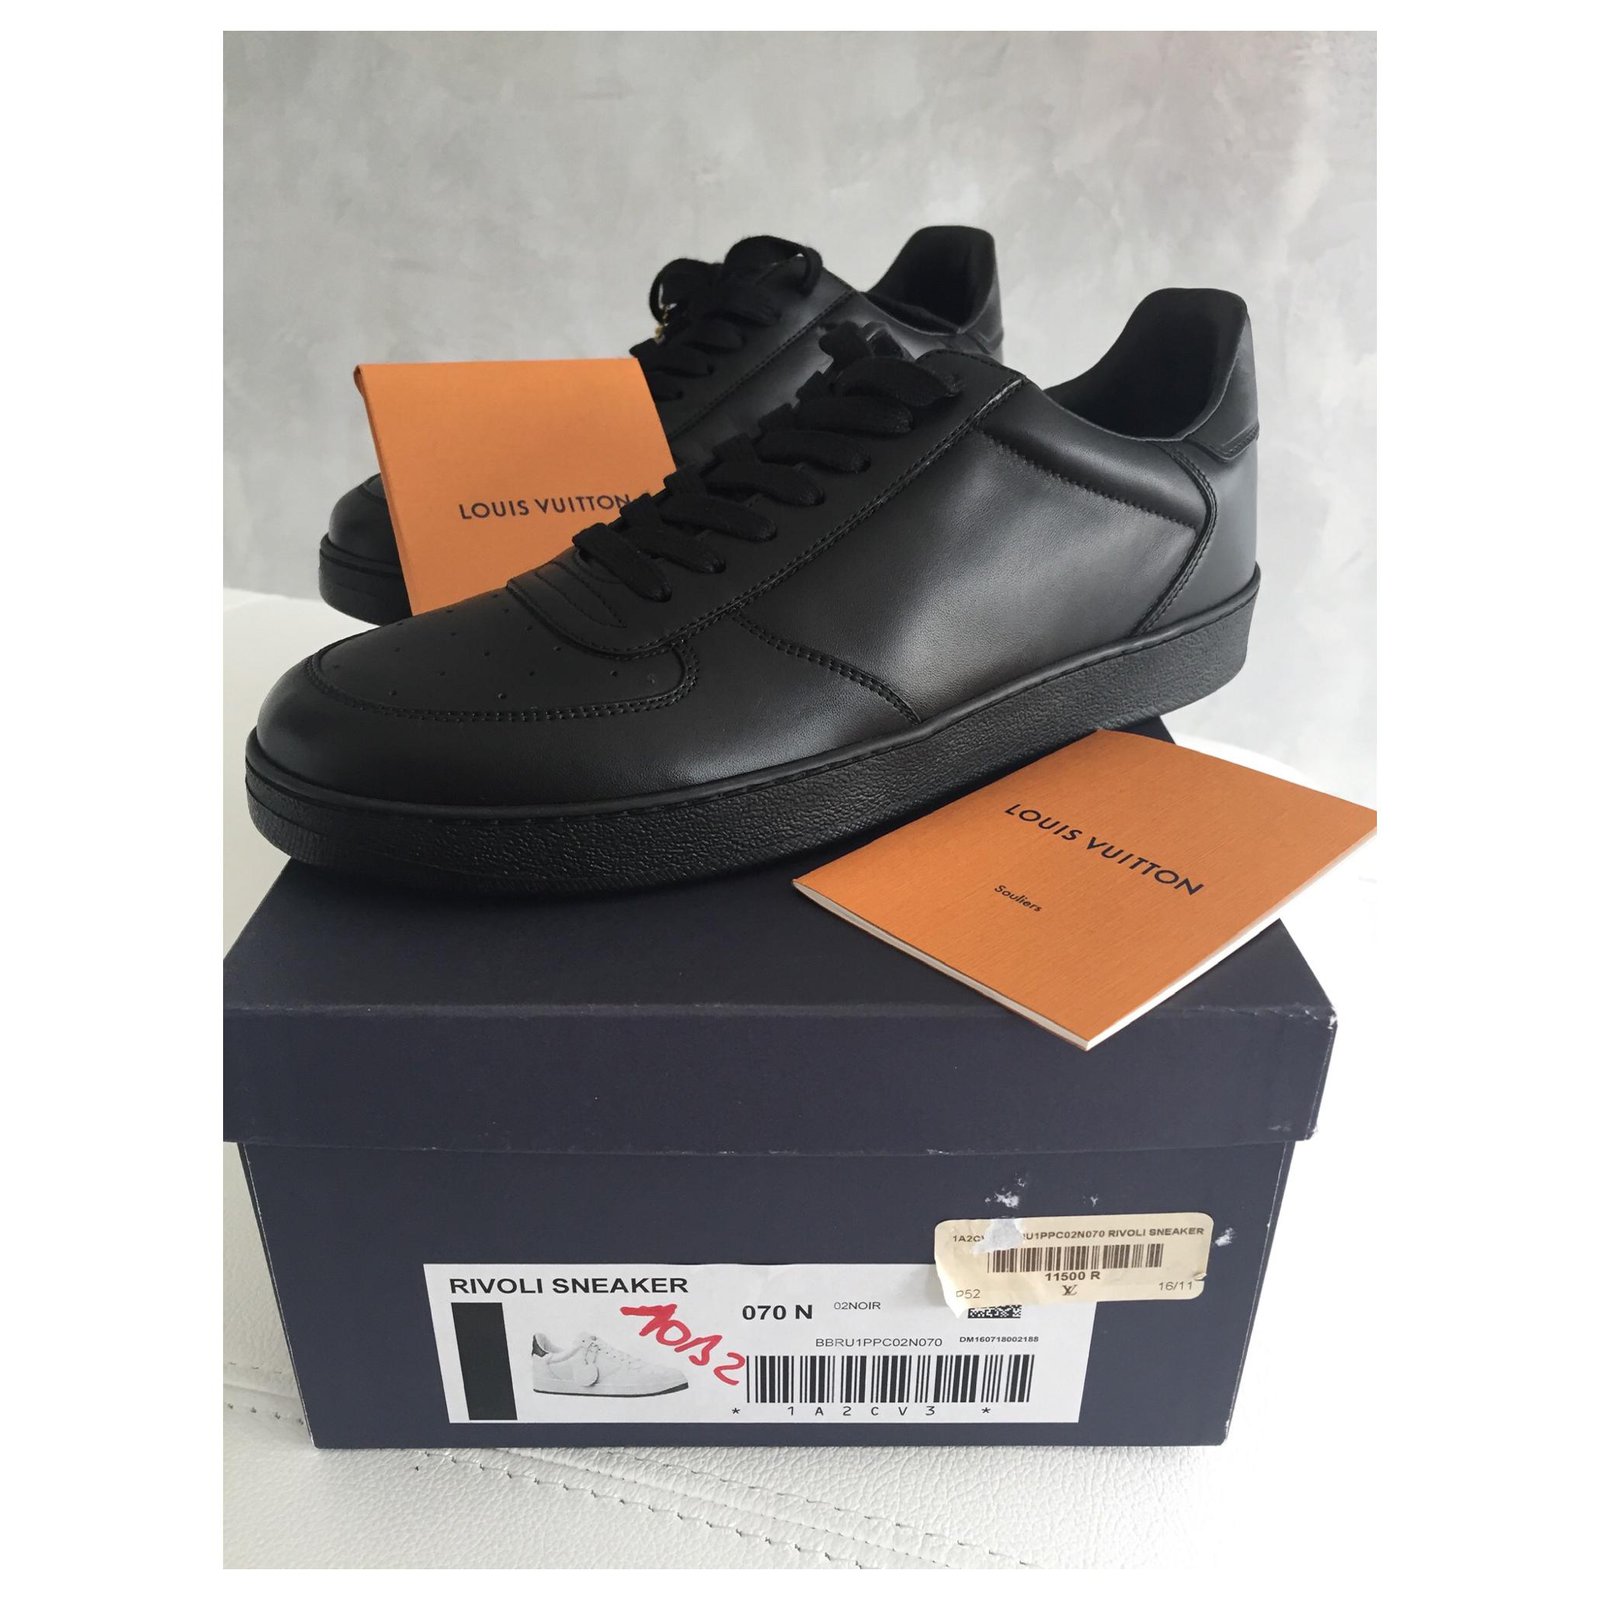 Louis Vuitton® Rivoli Sneaker Black. Size 12.0